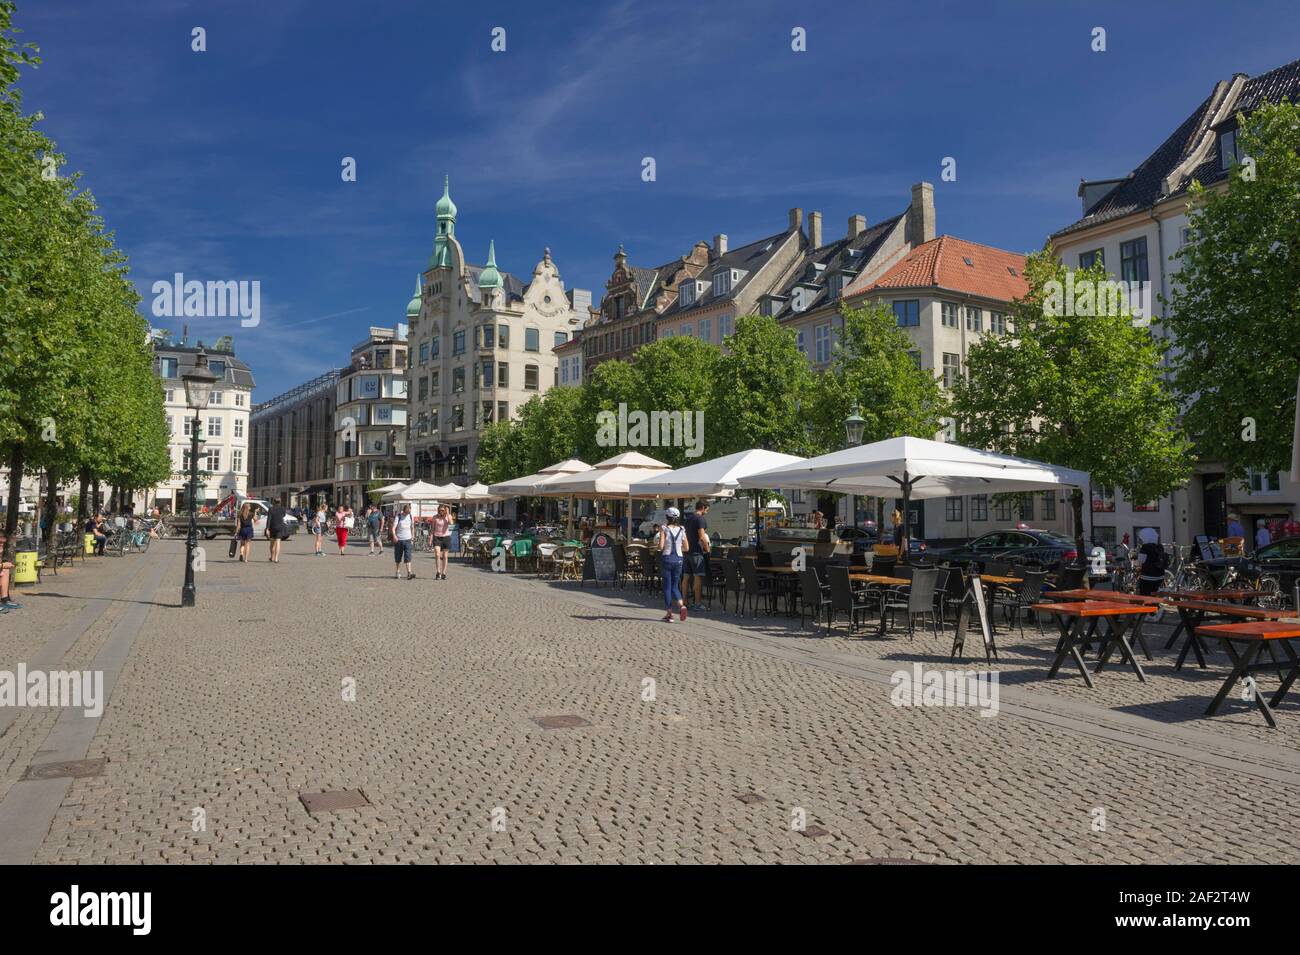 Menschen unter großen weißen Sonnenschirmen in einem Quadrat in Kopenhagen, Dänemark, sitzen Stockfoto